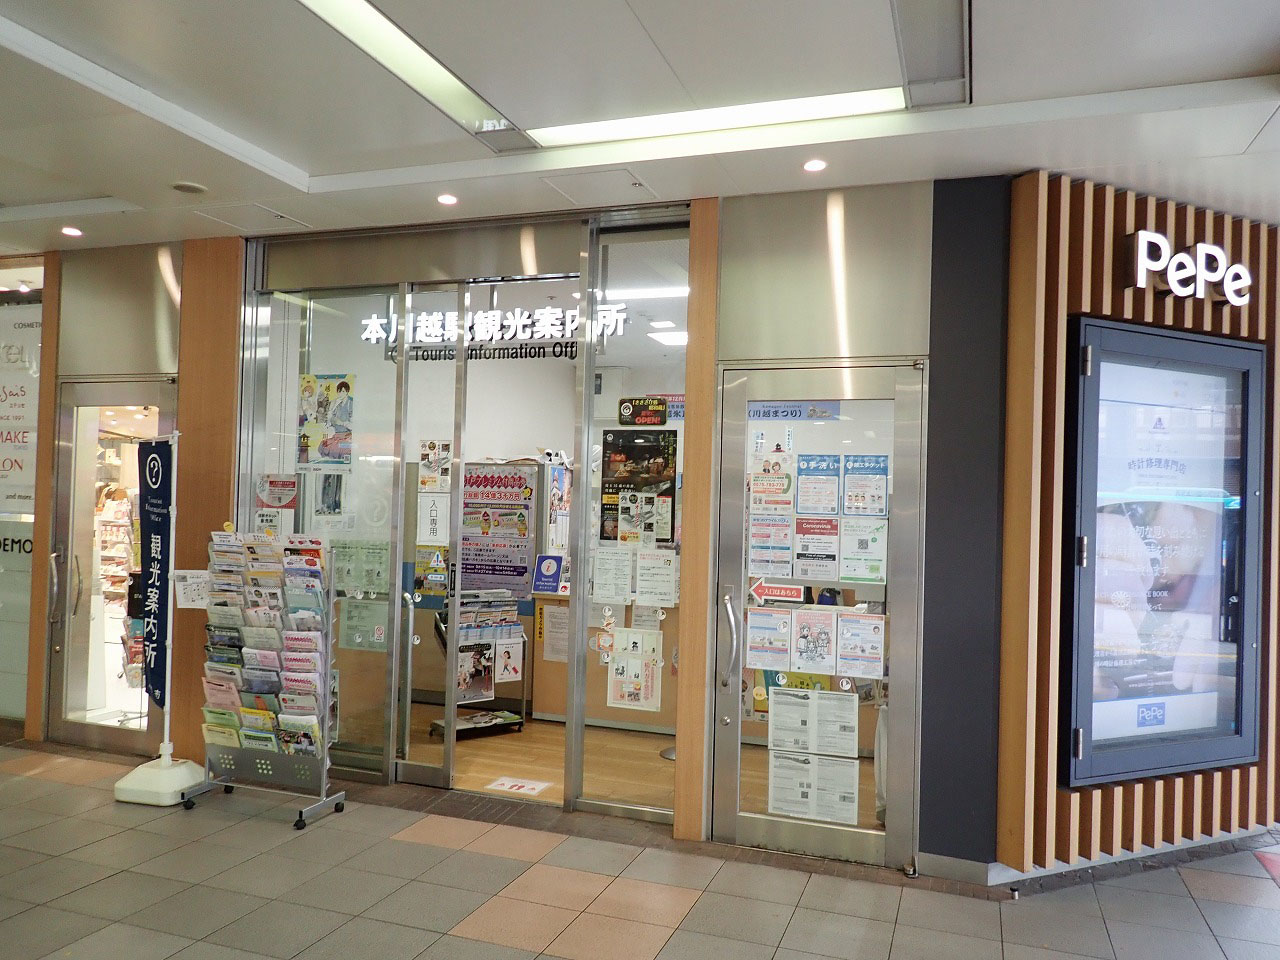 西武新宿線・本川越駅の構内にある川越の観光案内所